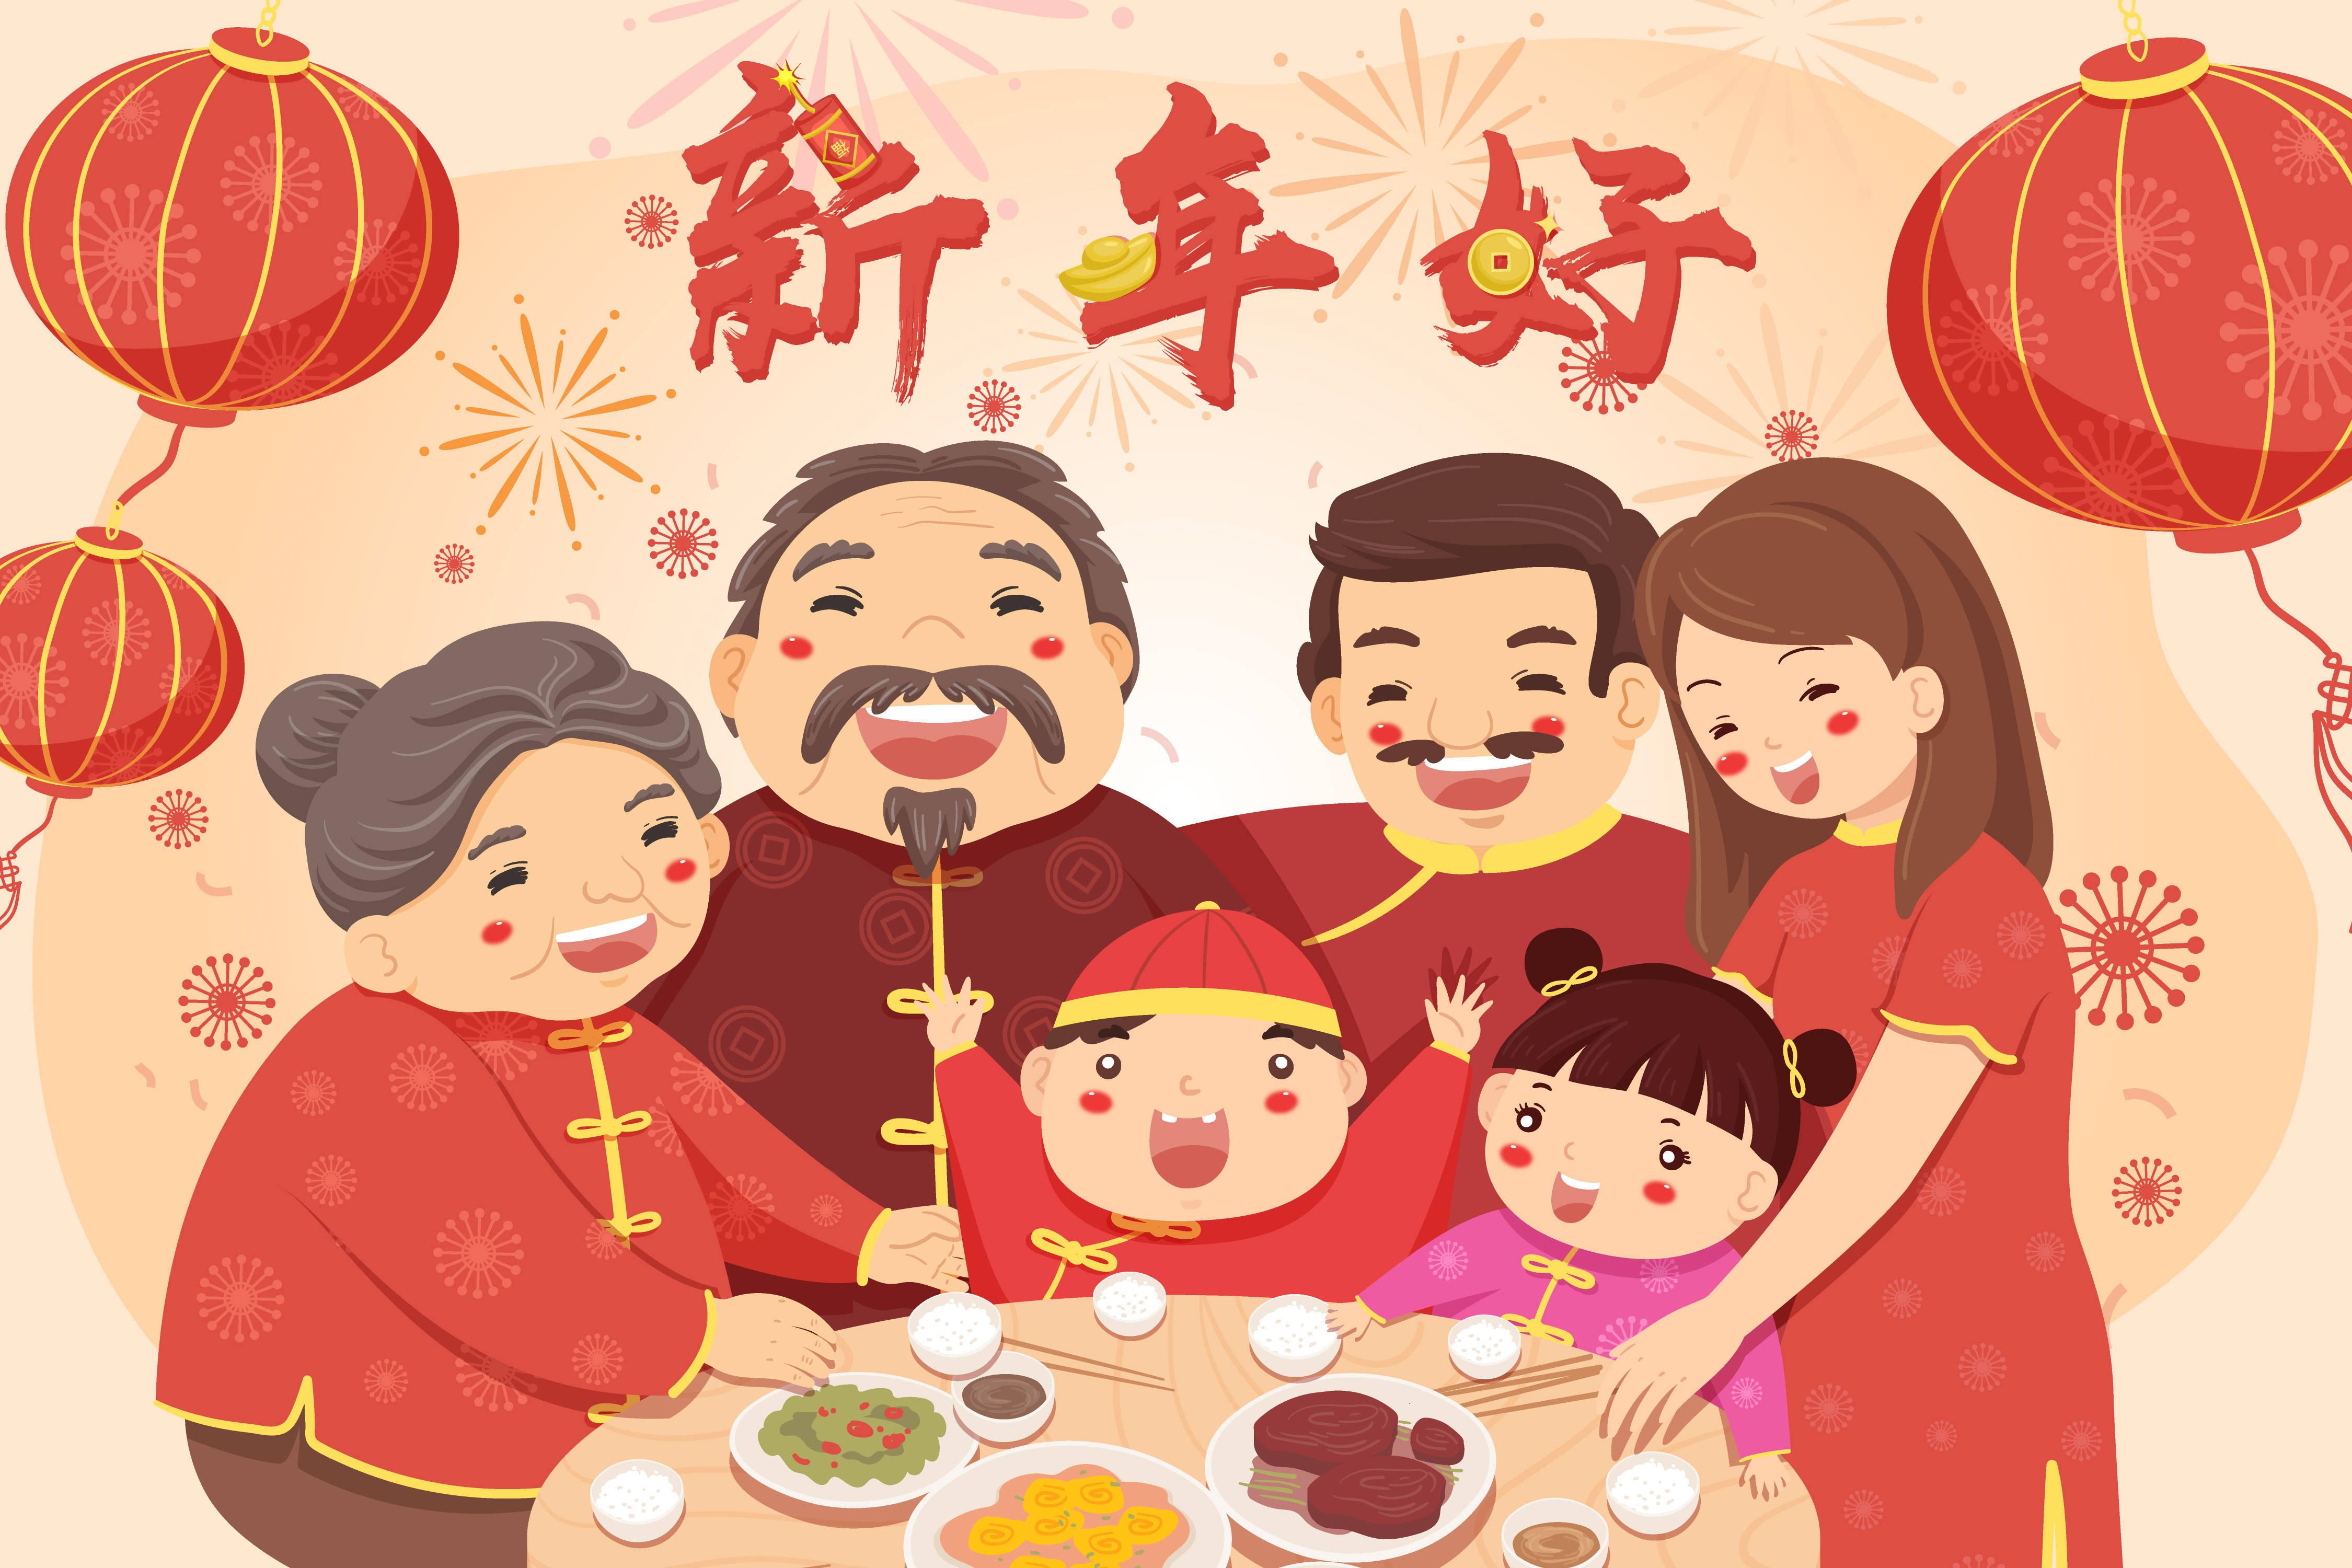 春节假期来了6件安全小事要注意让孩子度过一个平安的春节